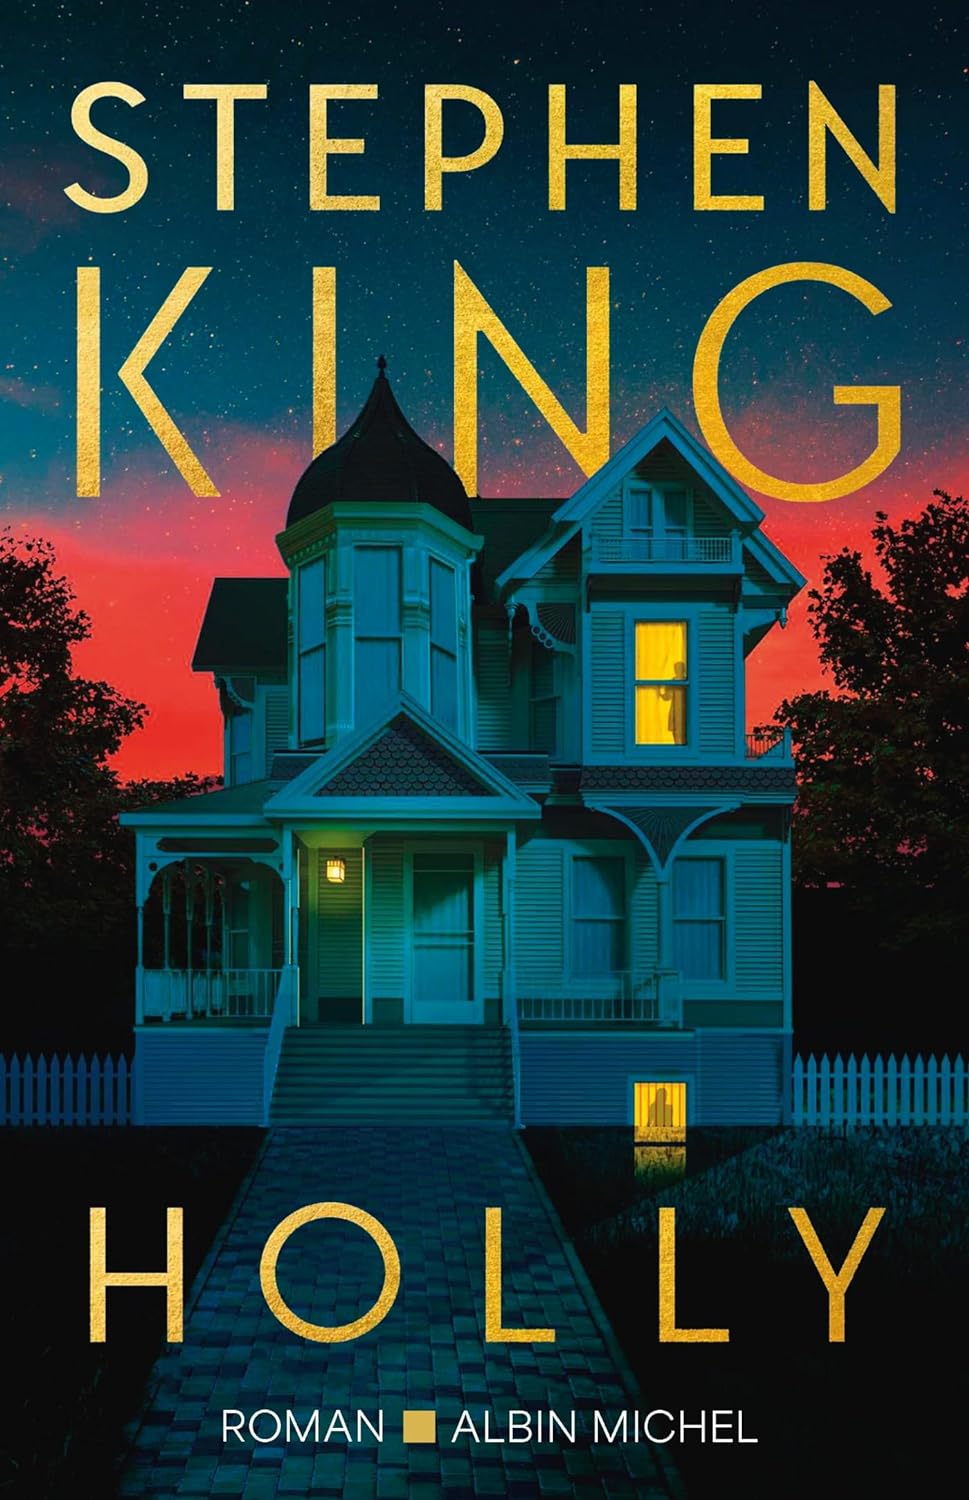 Le Livre de Poche édite des Stephen King avec des nouvelles couvertures  très belles pour l'été - Stephen King France